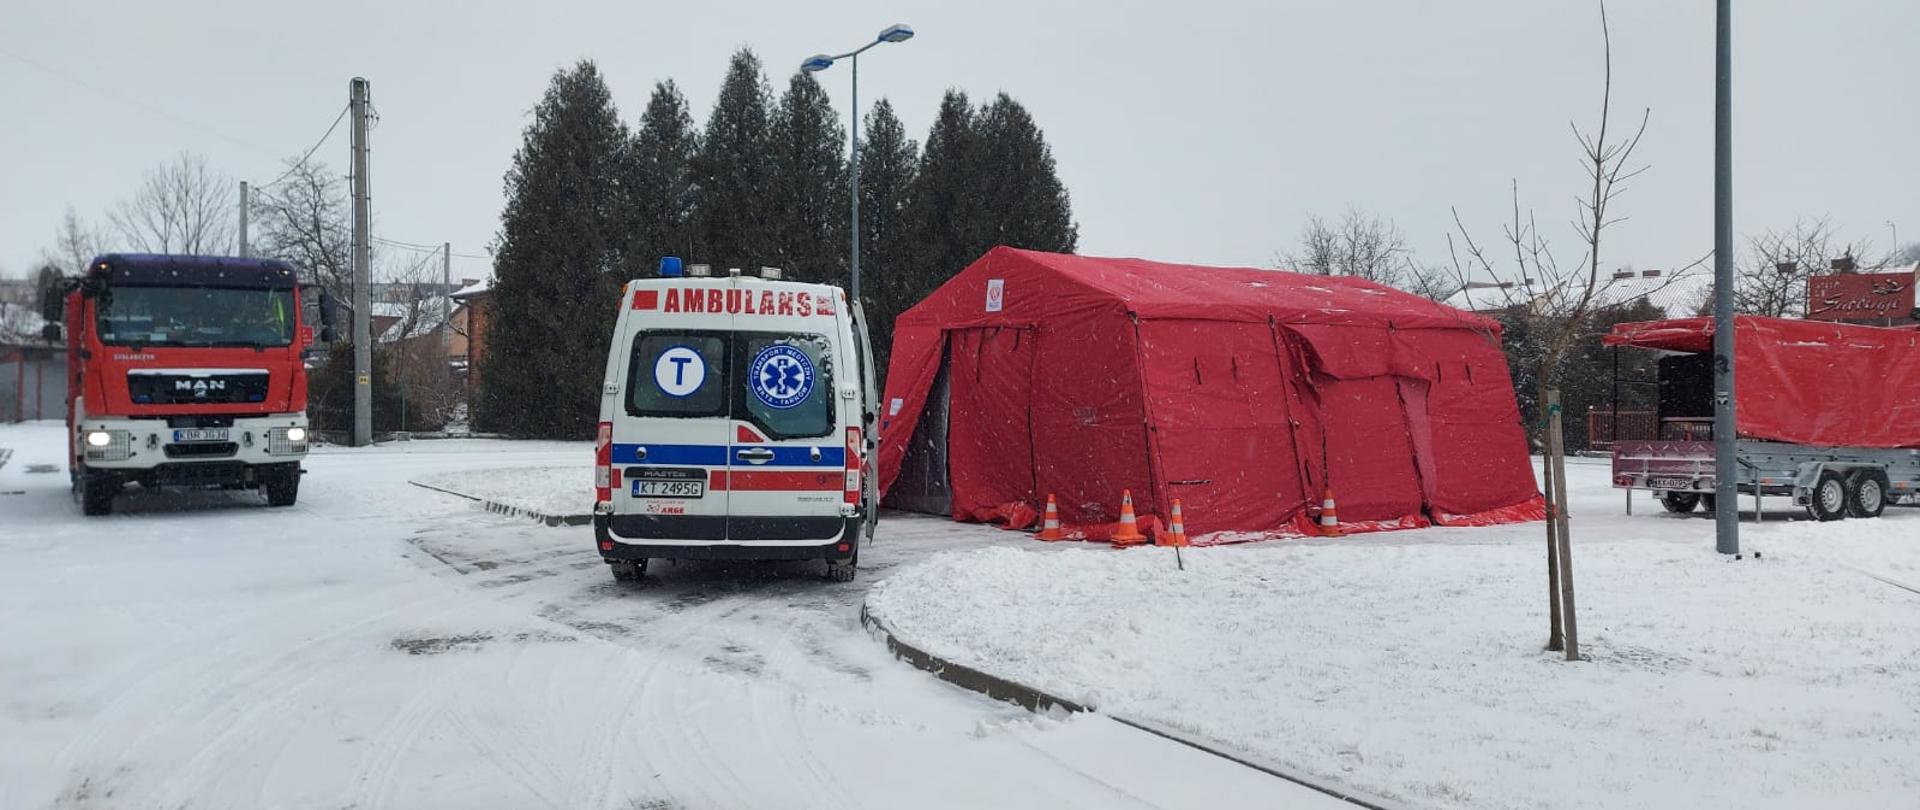 Czerwony namiot do poboru próbek obok ambulans i pojazd straży pożarnej. Teren zaśnieżony.